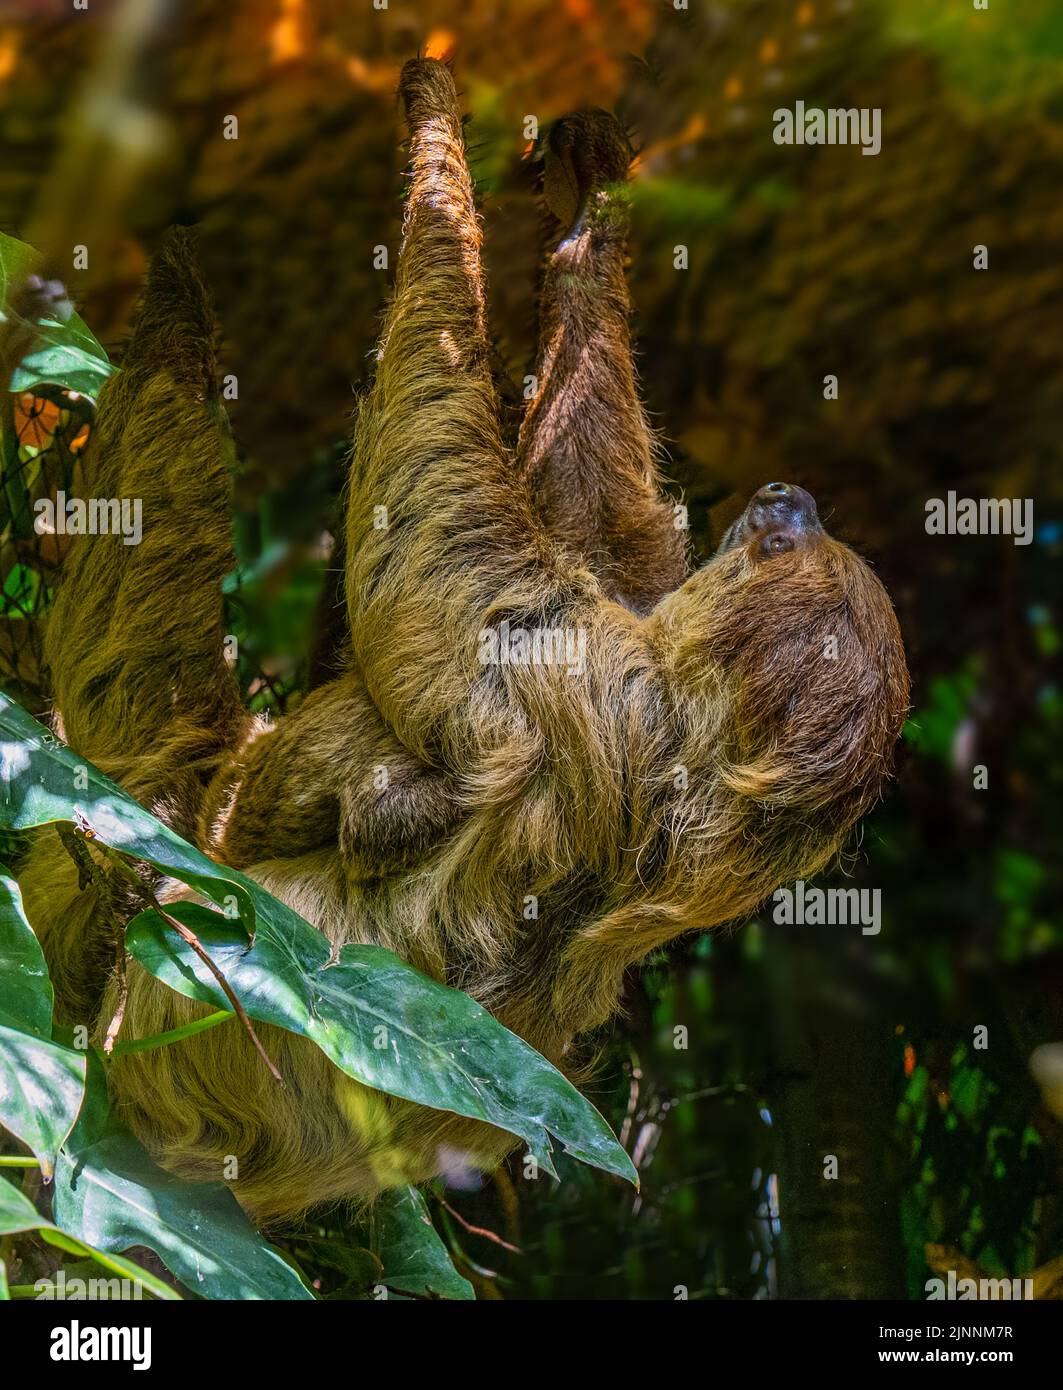 Sloth à deux doigts. La mère et le cub pendent d'une branche. Banque D'Images